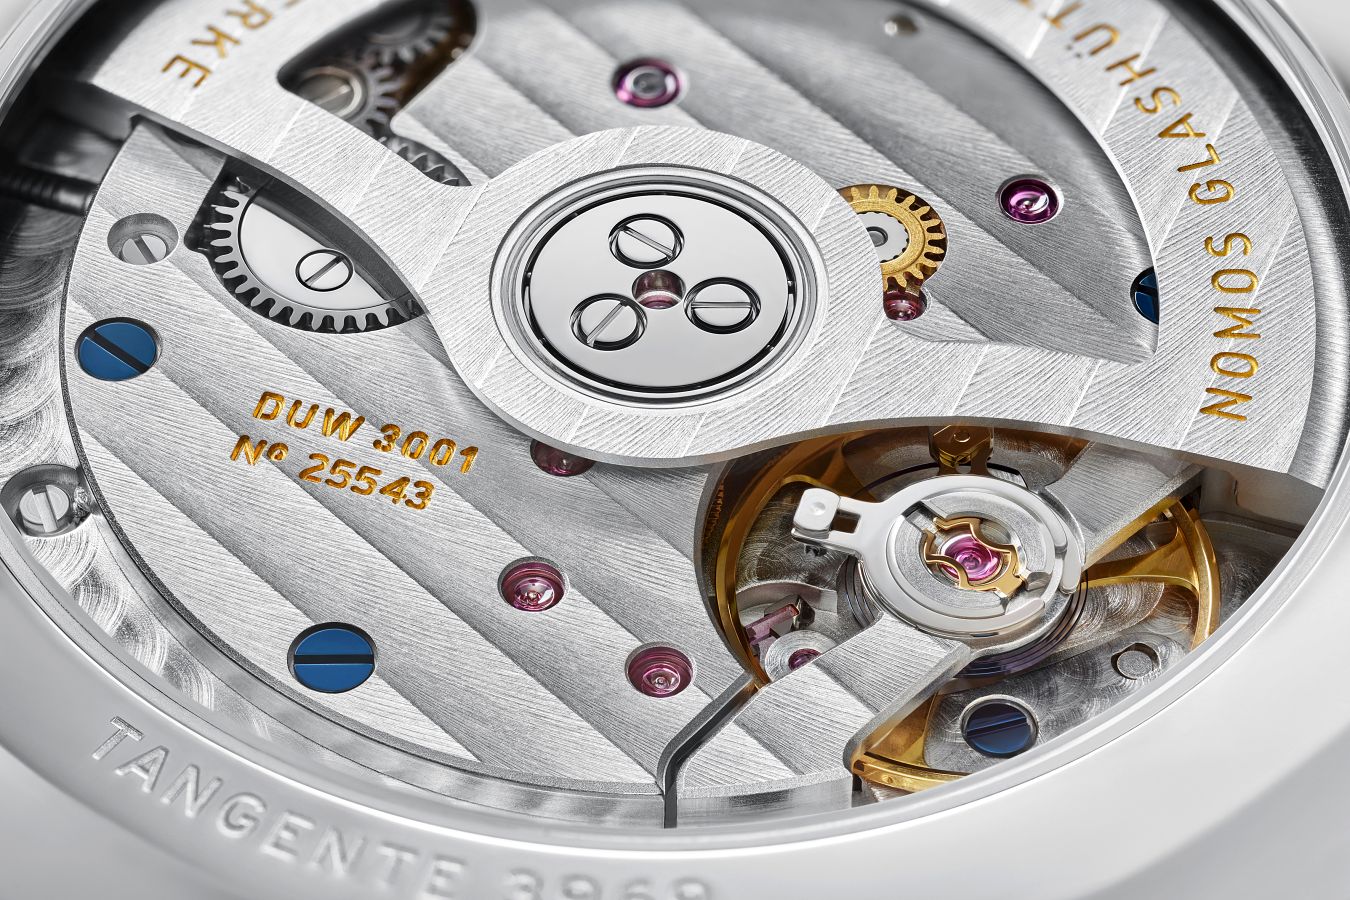 Zegarek Nomos Tangente Neomatik 39 zdobywa nagrodę iF Award 2023 za smukłą elegancję